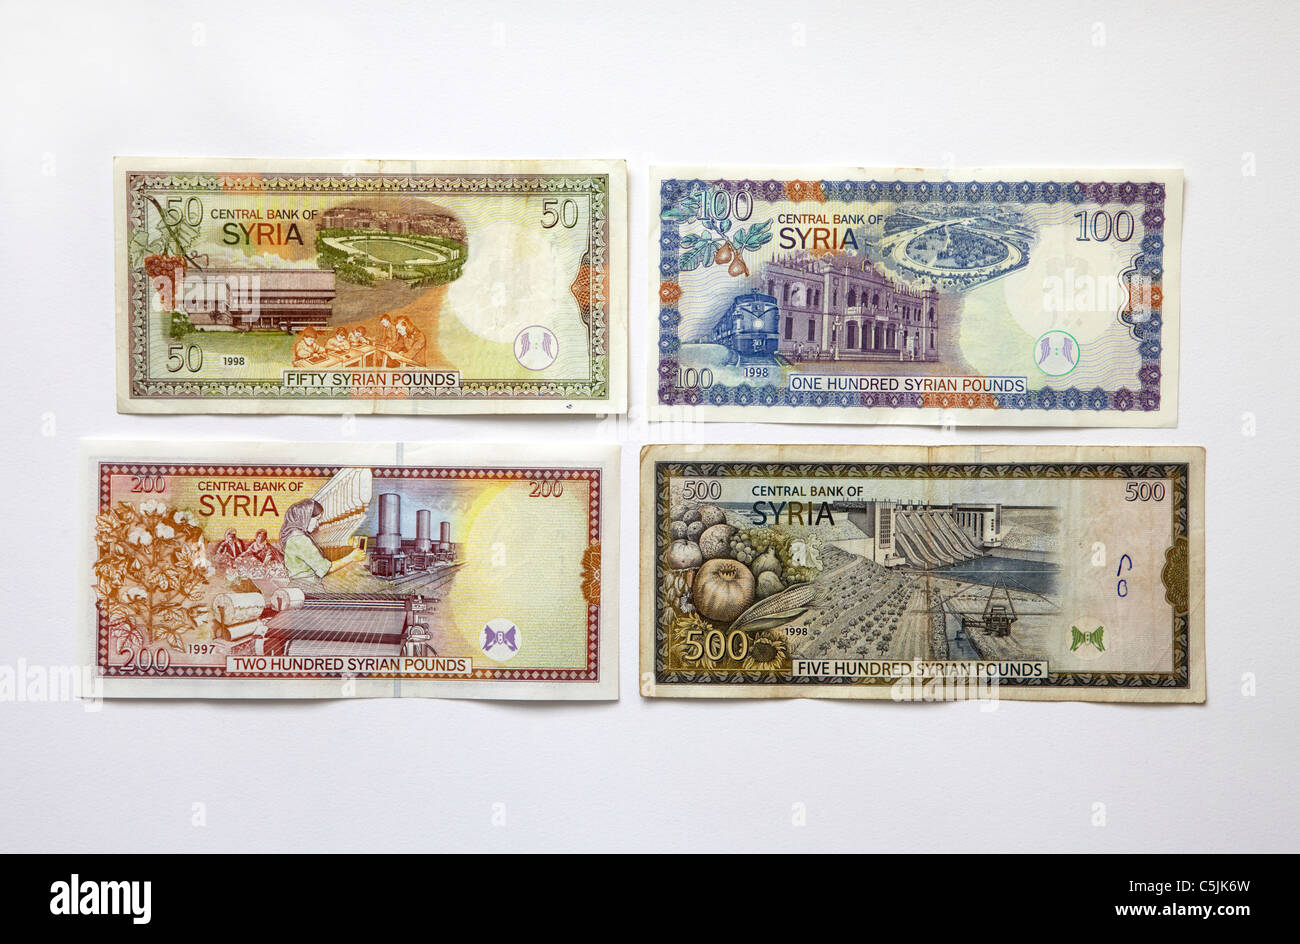 Syrian pound banknotes Stock Photo